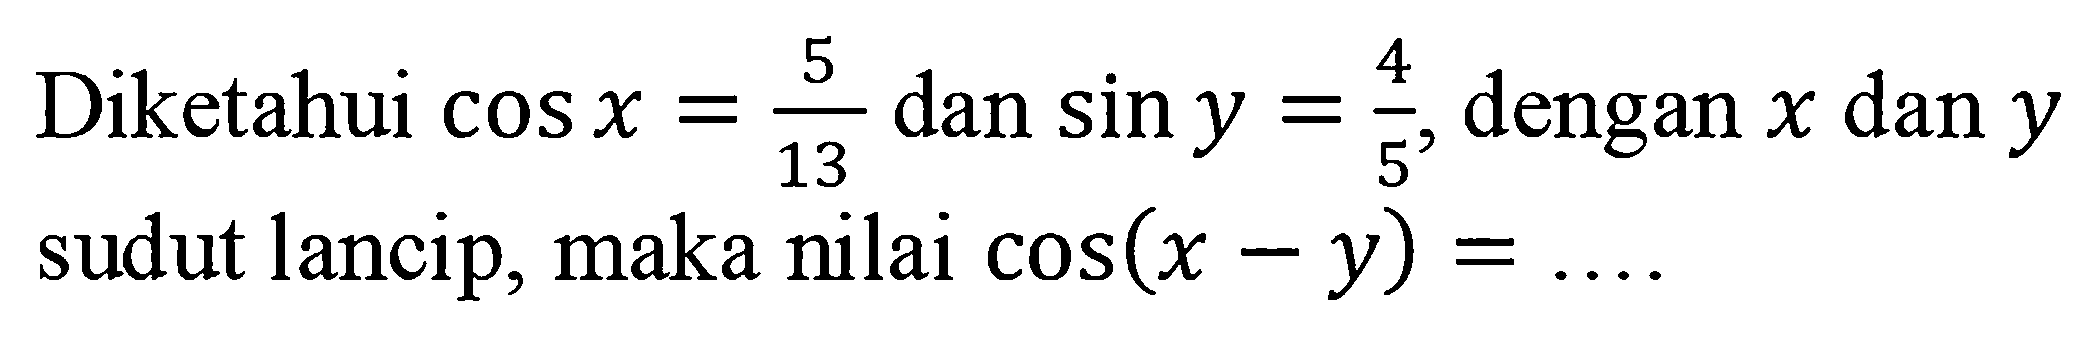 Diketahui cos x = 5/13 dan sin y = 4/5, dengan x dan y sudut lancip, maka nilai cos(x - y)= .....